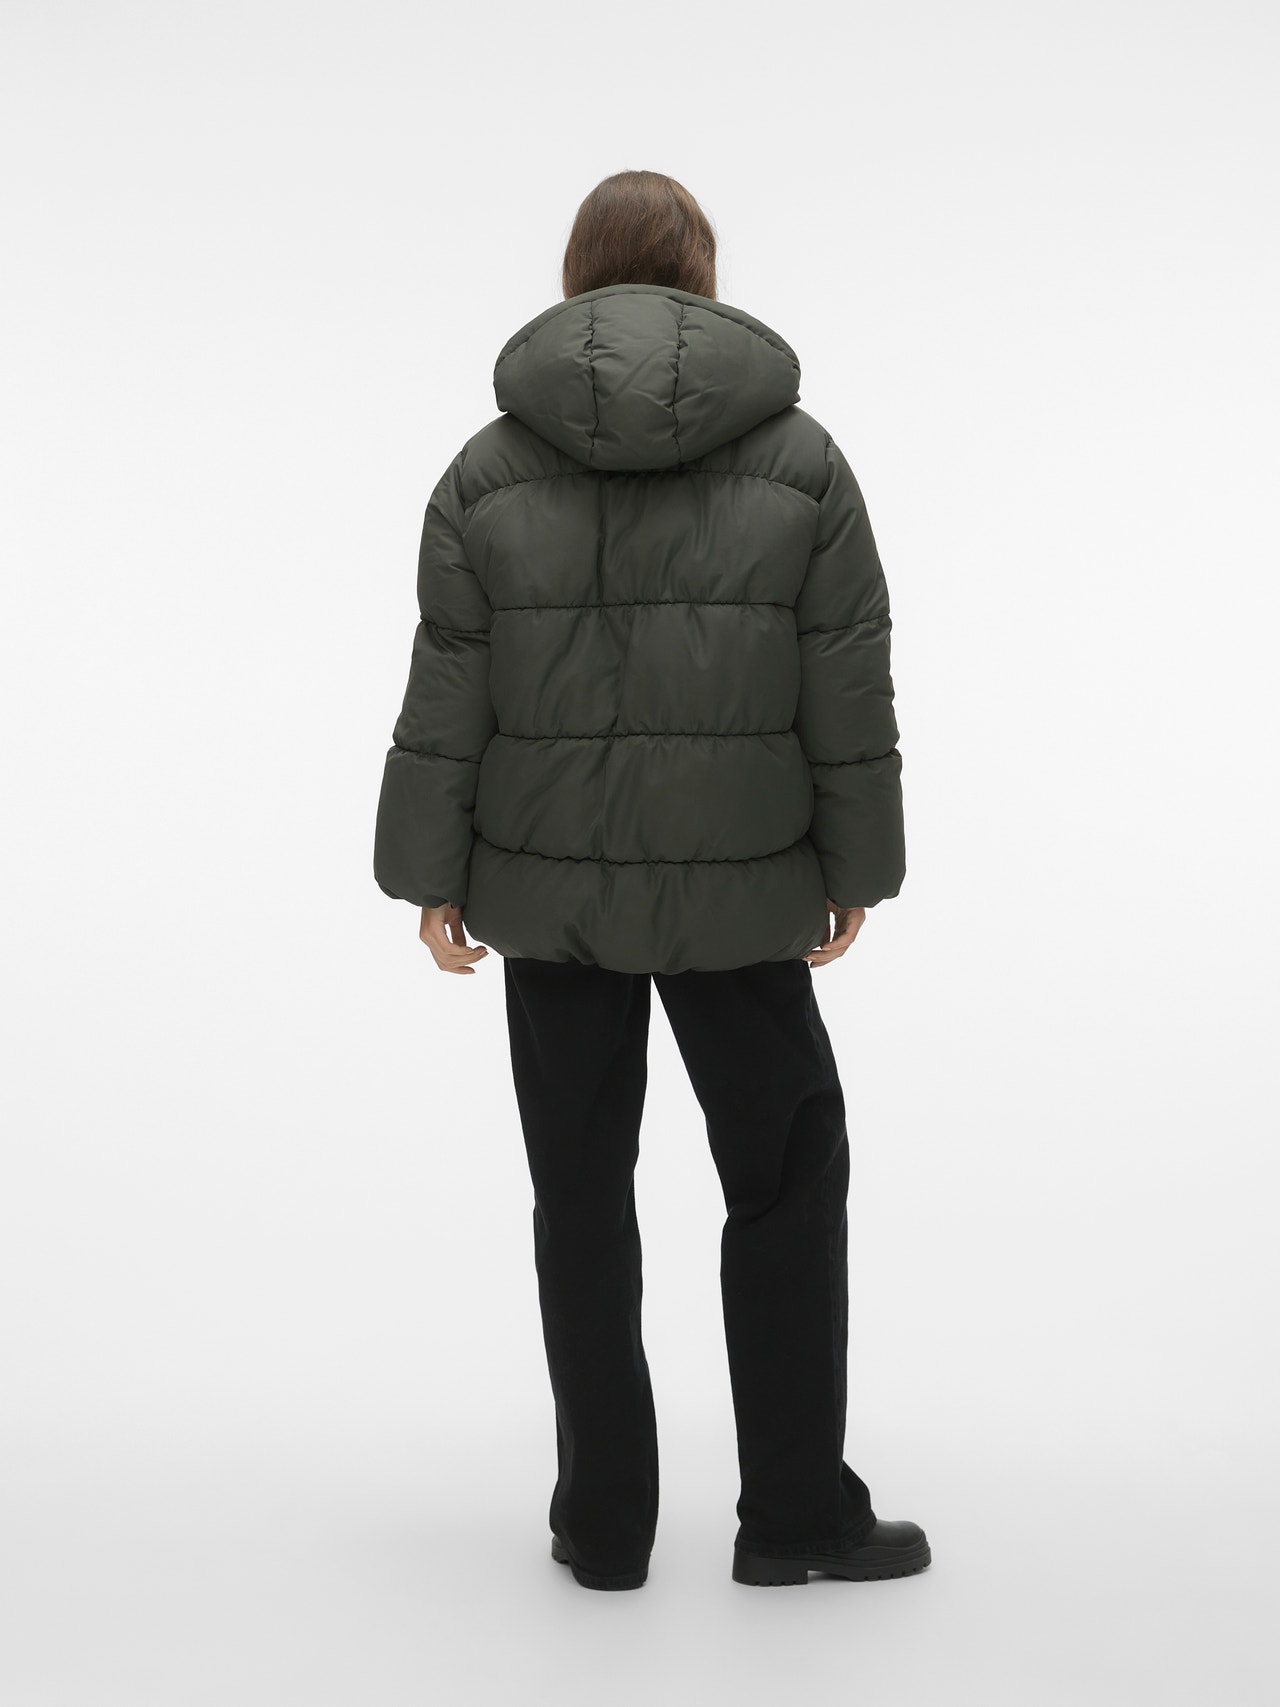 Vero Moda VMNIO Jacket -Peat - 10299279